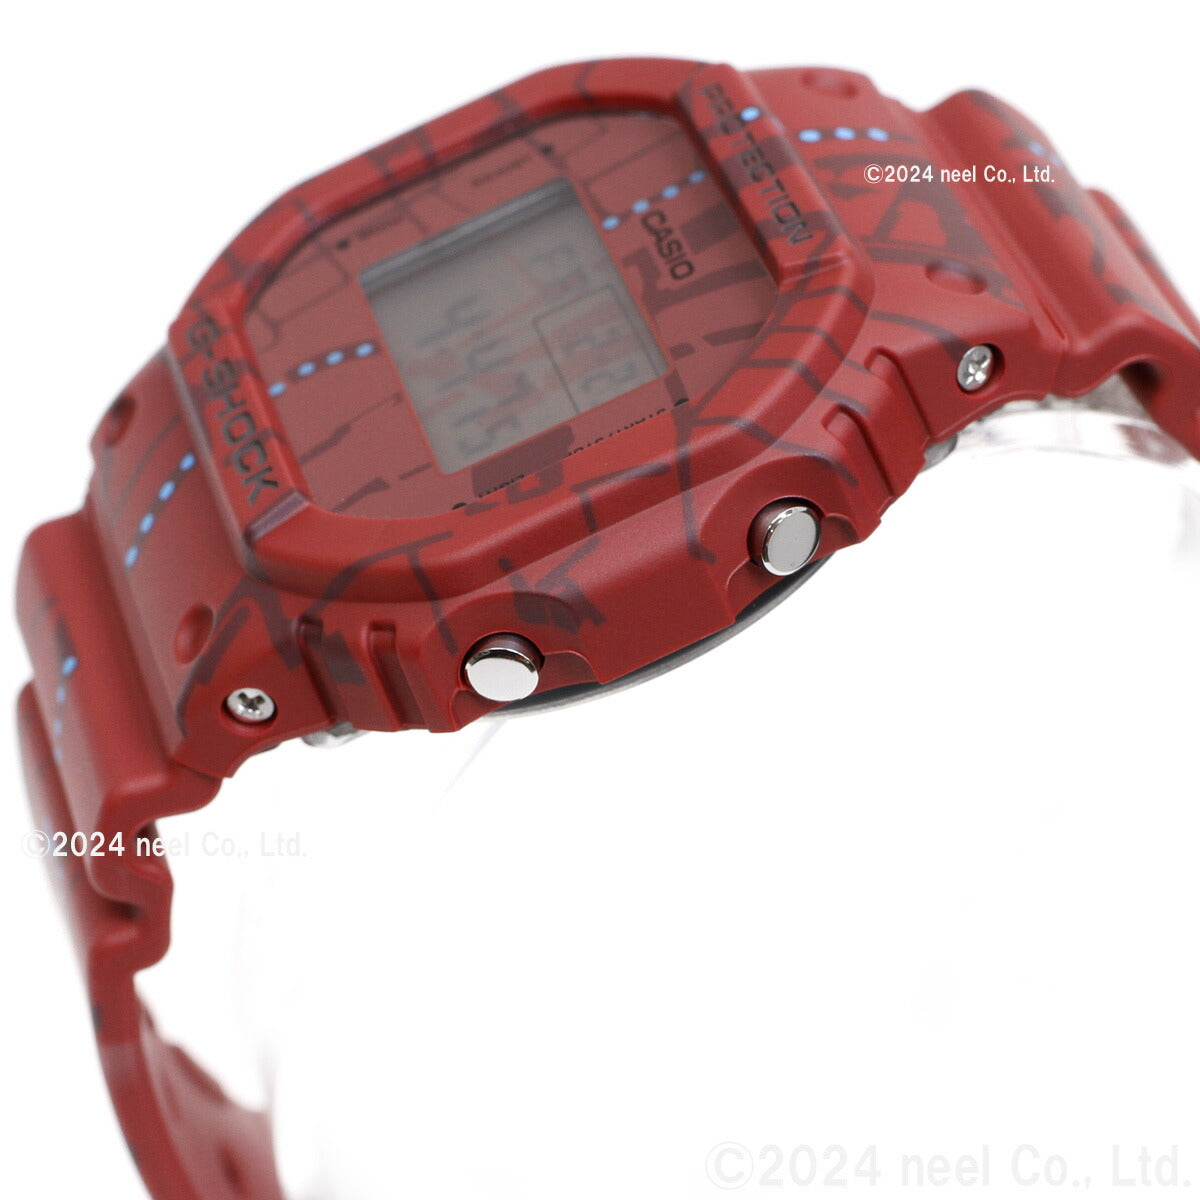 メンズ 腕時計 カシオ G-SHOCK DW-5600SBY-4JR男性用